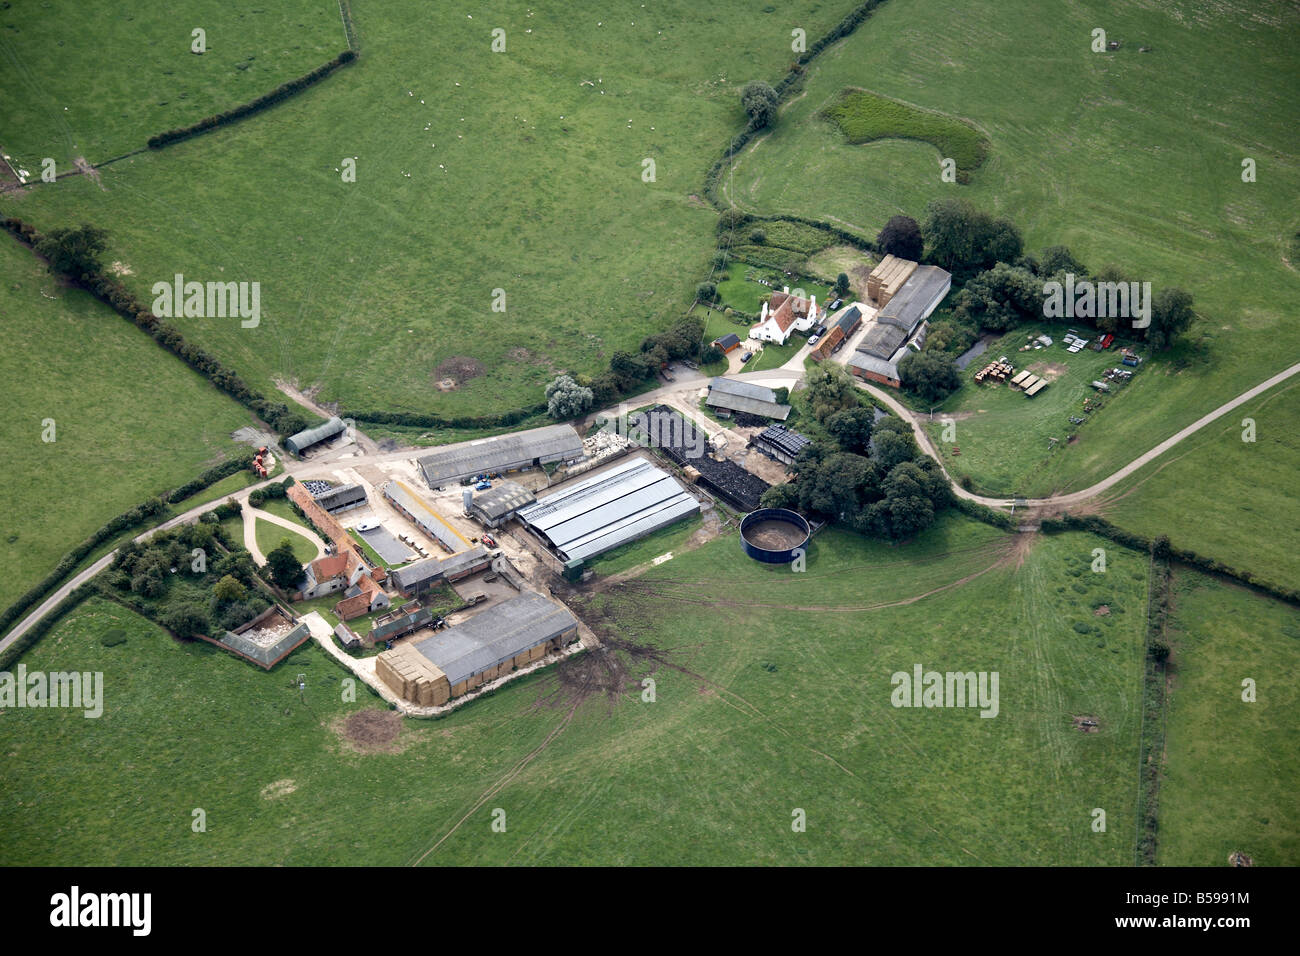 Vue aérienne sud-ouest du pays, les champs agricoles Buckinghamshire England UK oblique de haut niveau Banque D'Images